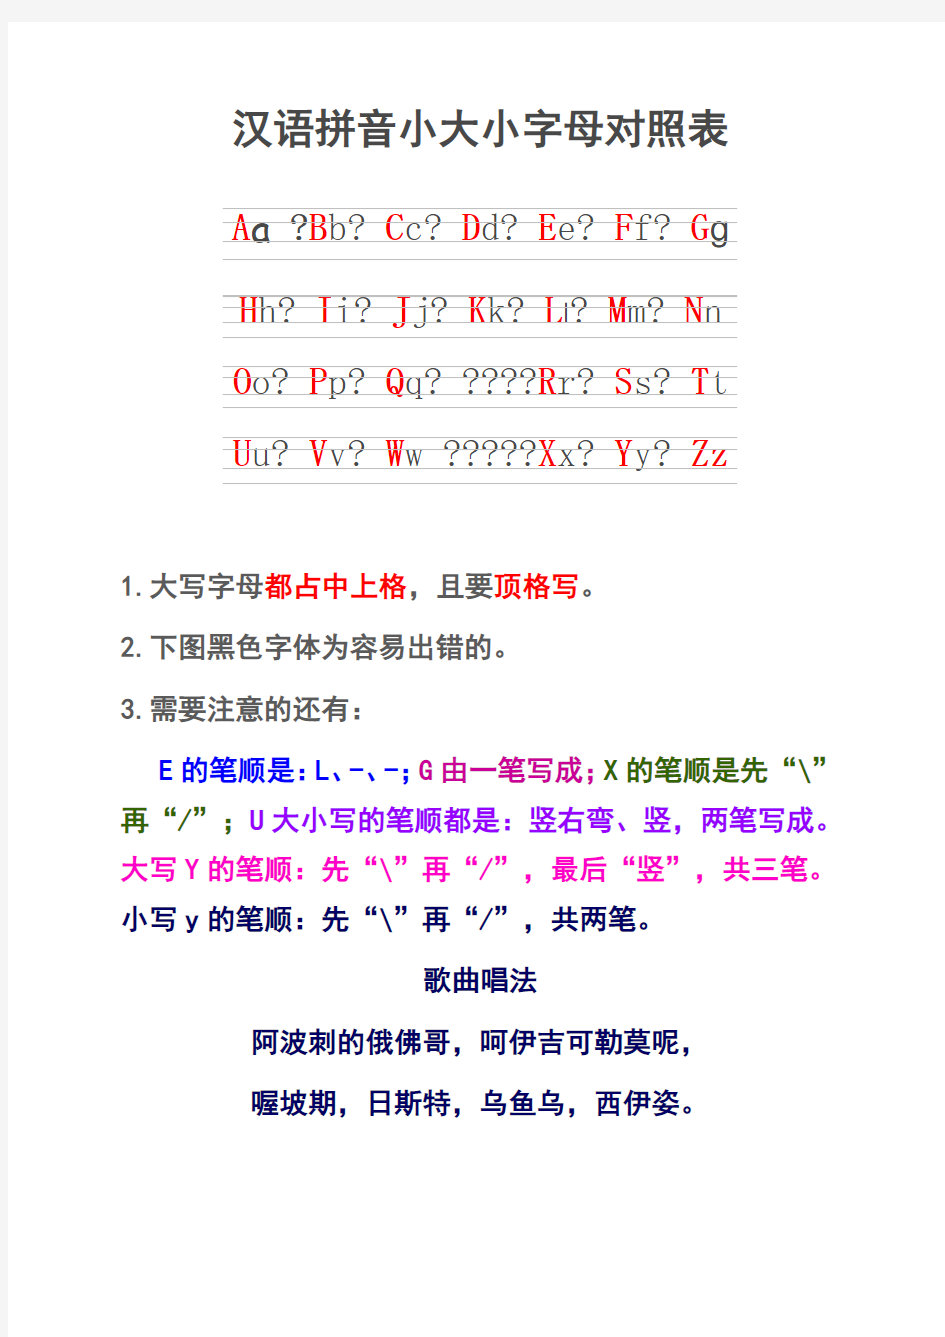 汉语拼音大小写字母对照表